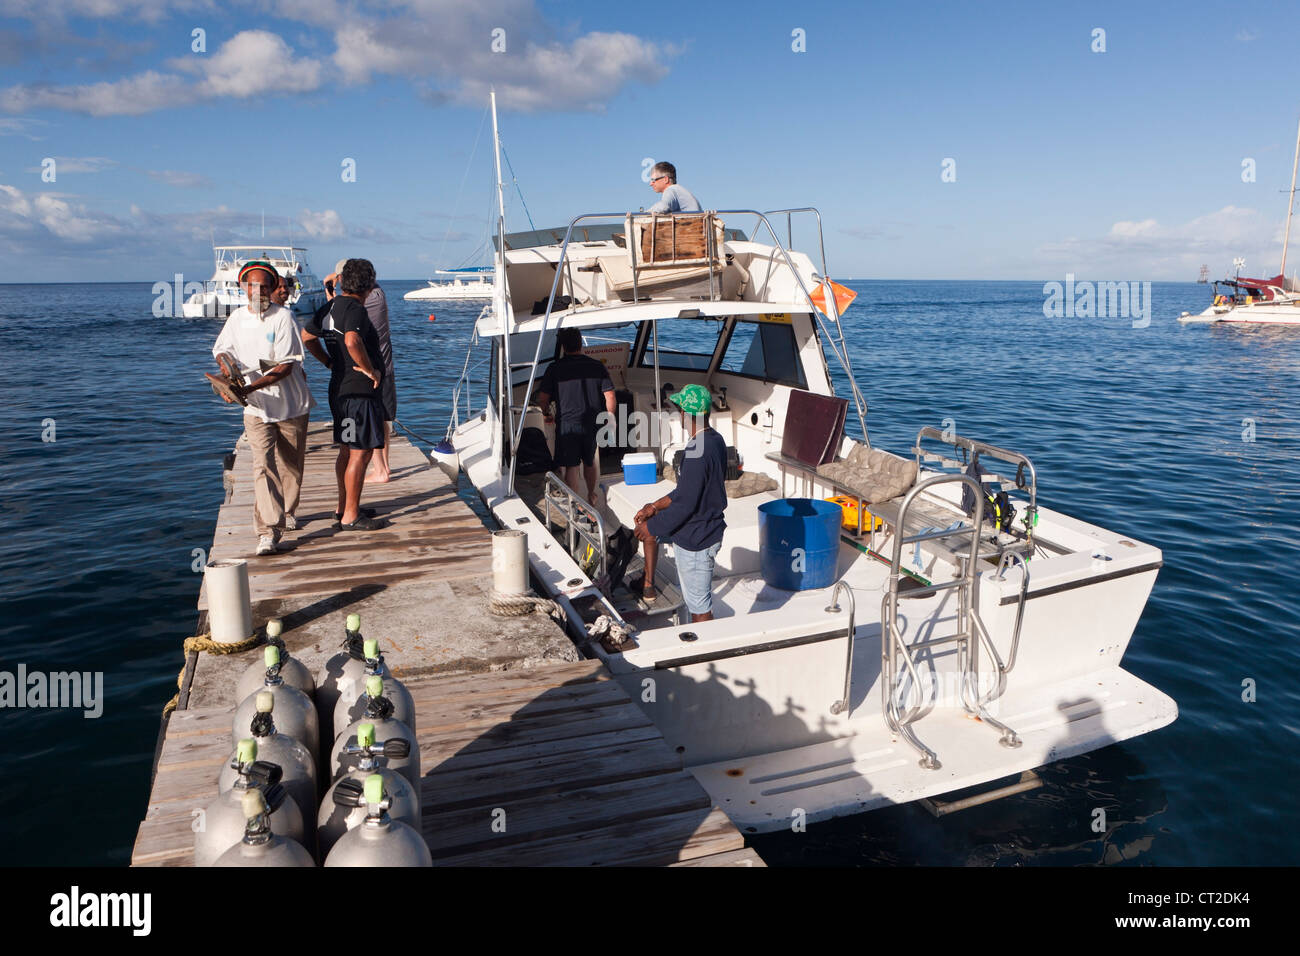 Voyage d'observation des baleines, la mer des Caraïbes, la Dominique Banque D'Images